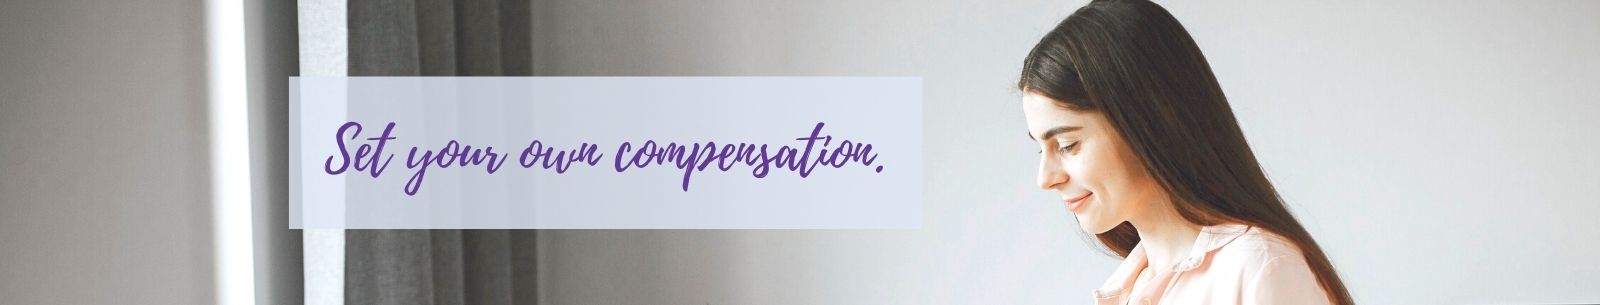 set your compensation - surrogate mother